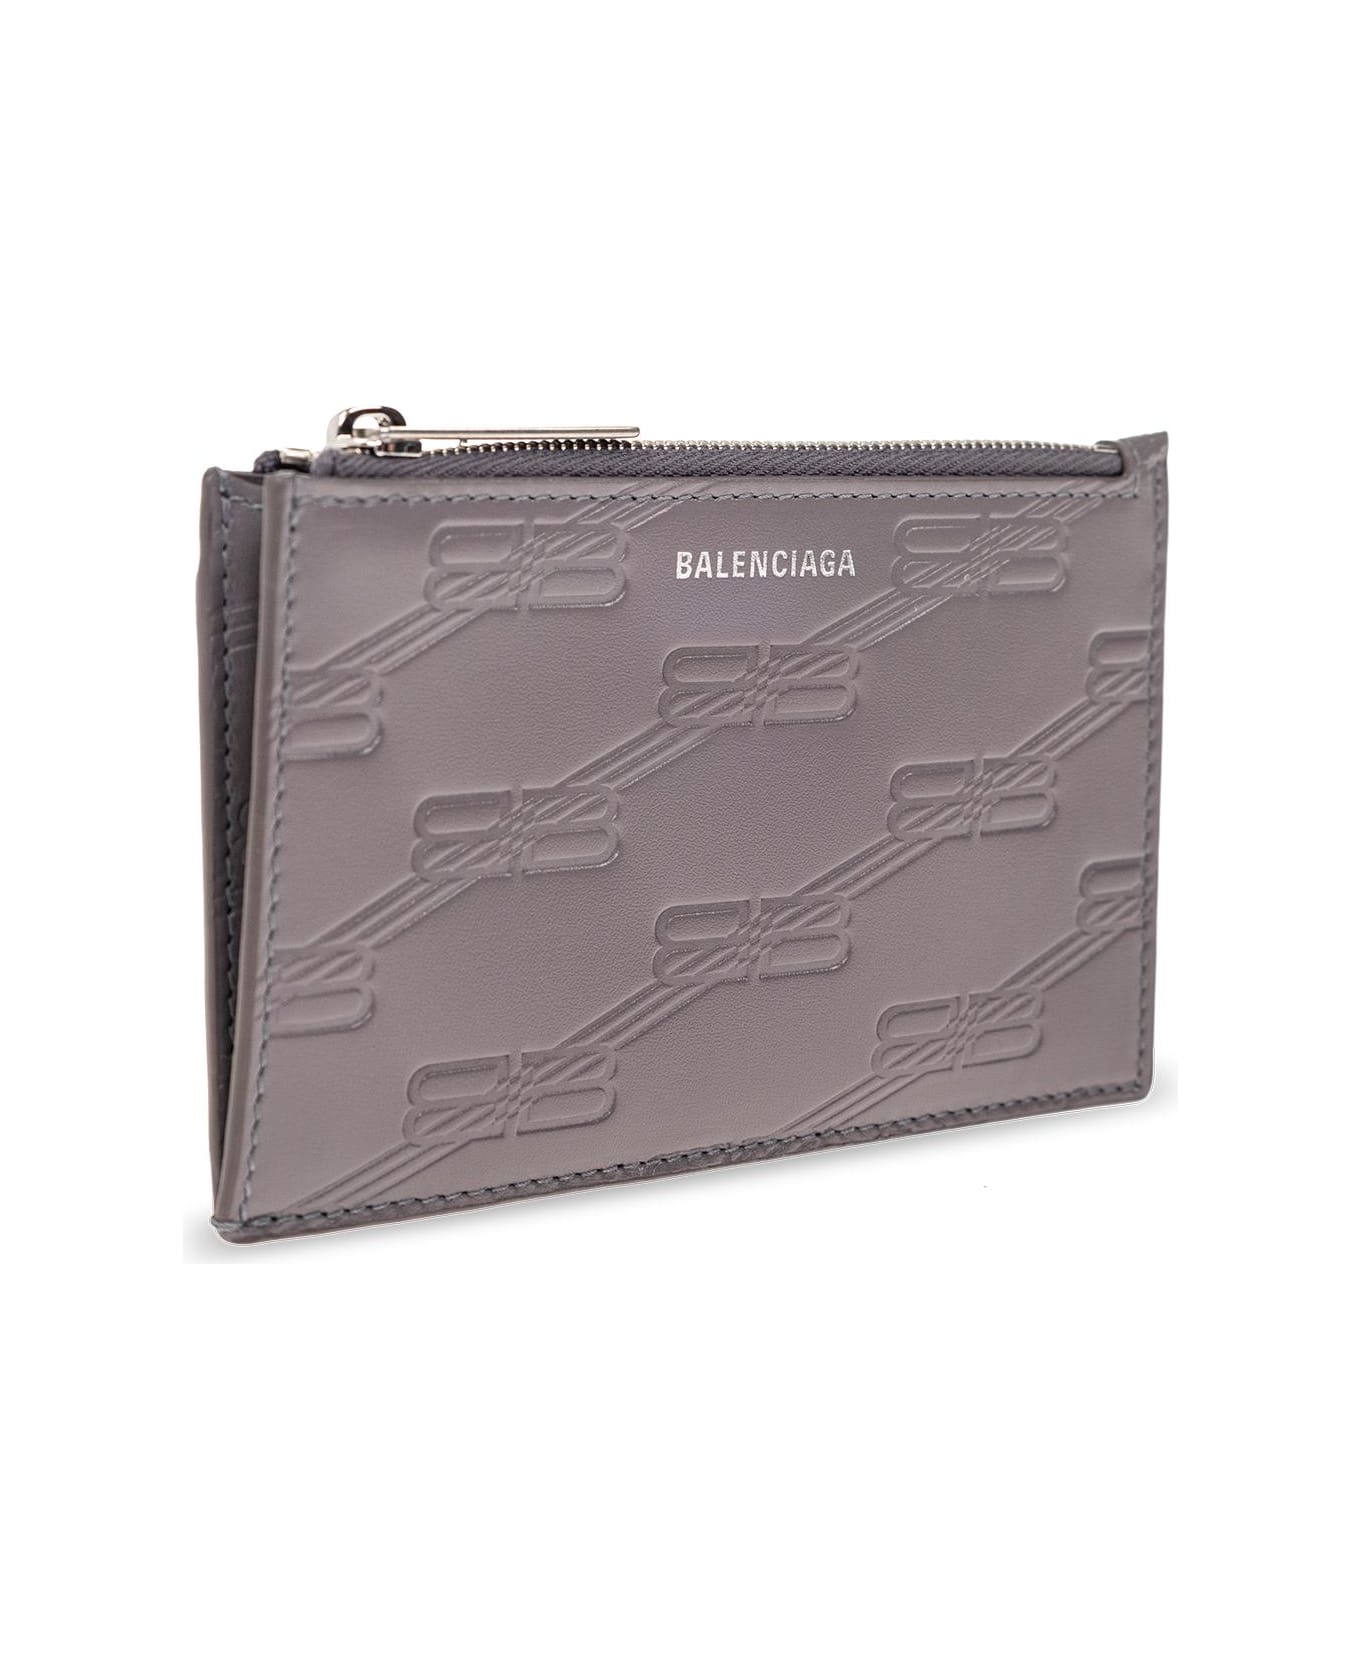 Balenciaga Card Case - GREY